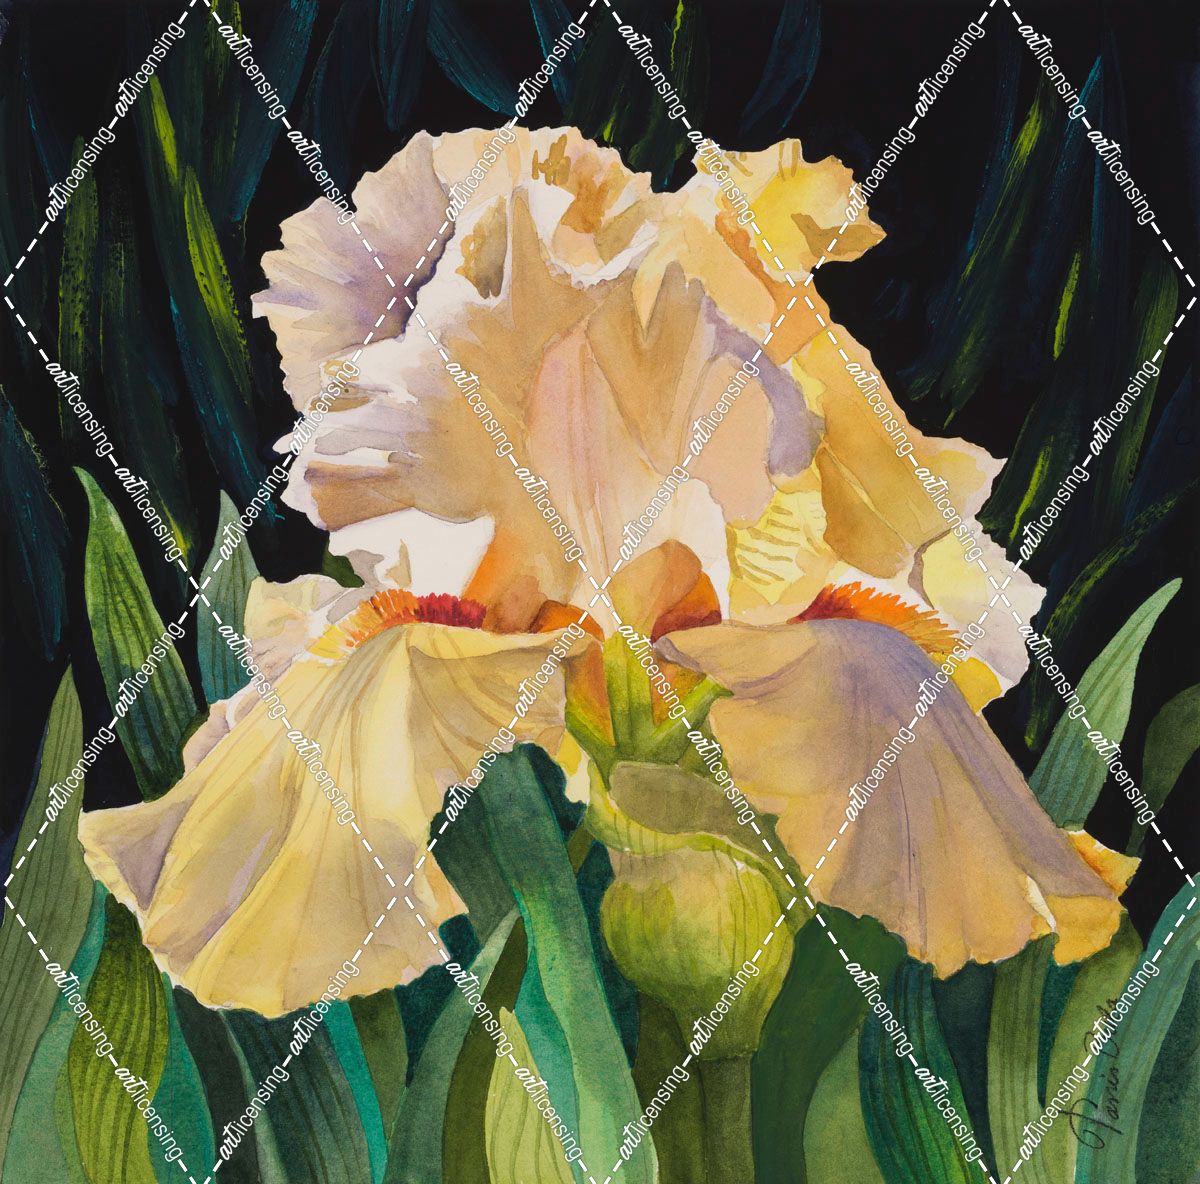 Yellow Iris